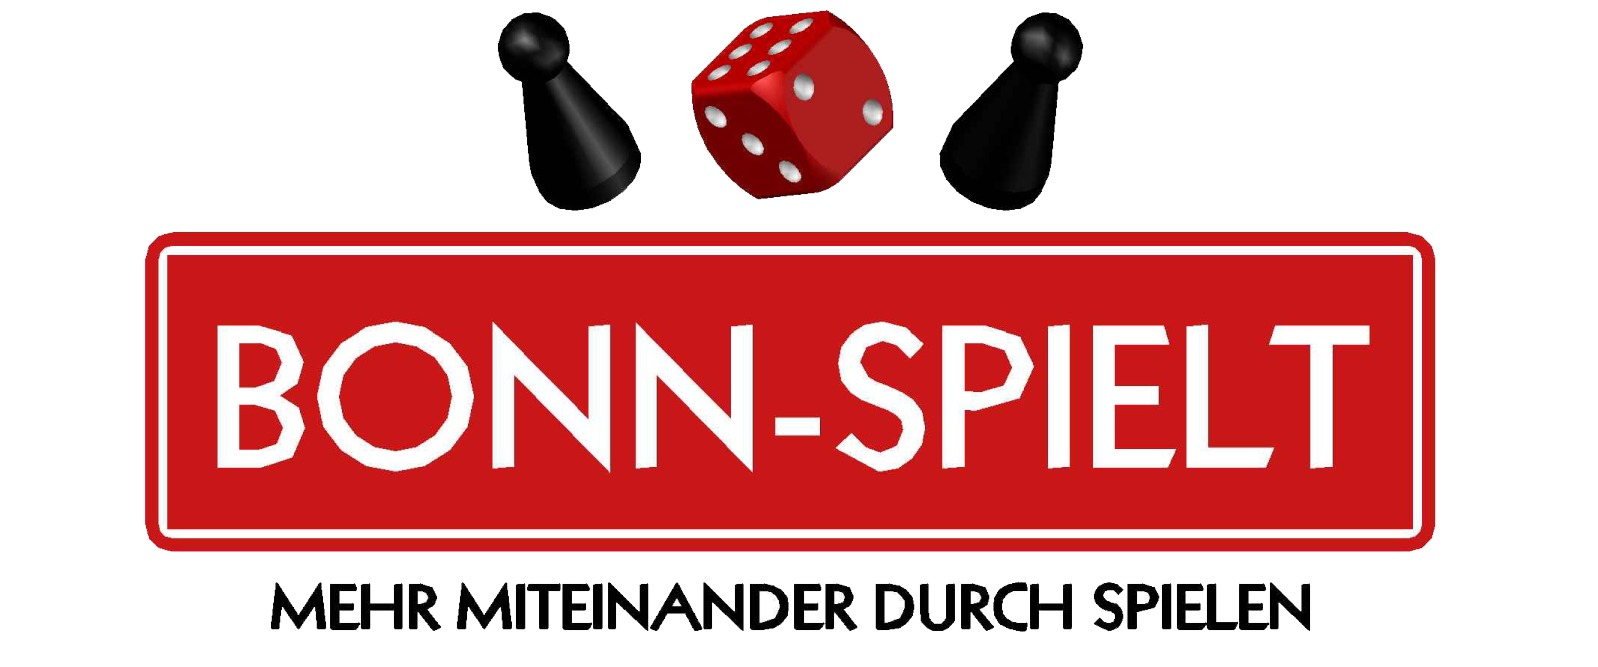 BONN-SPIELT 2020